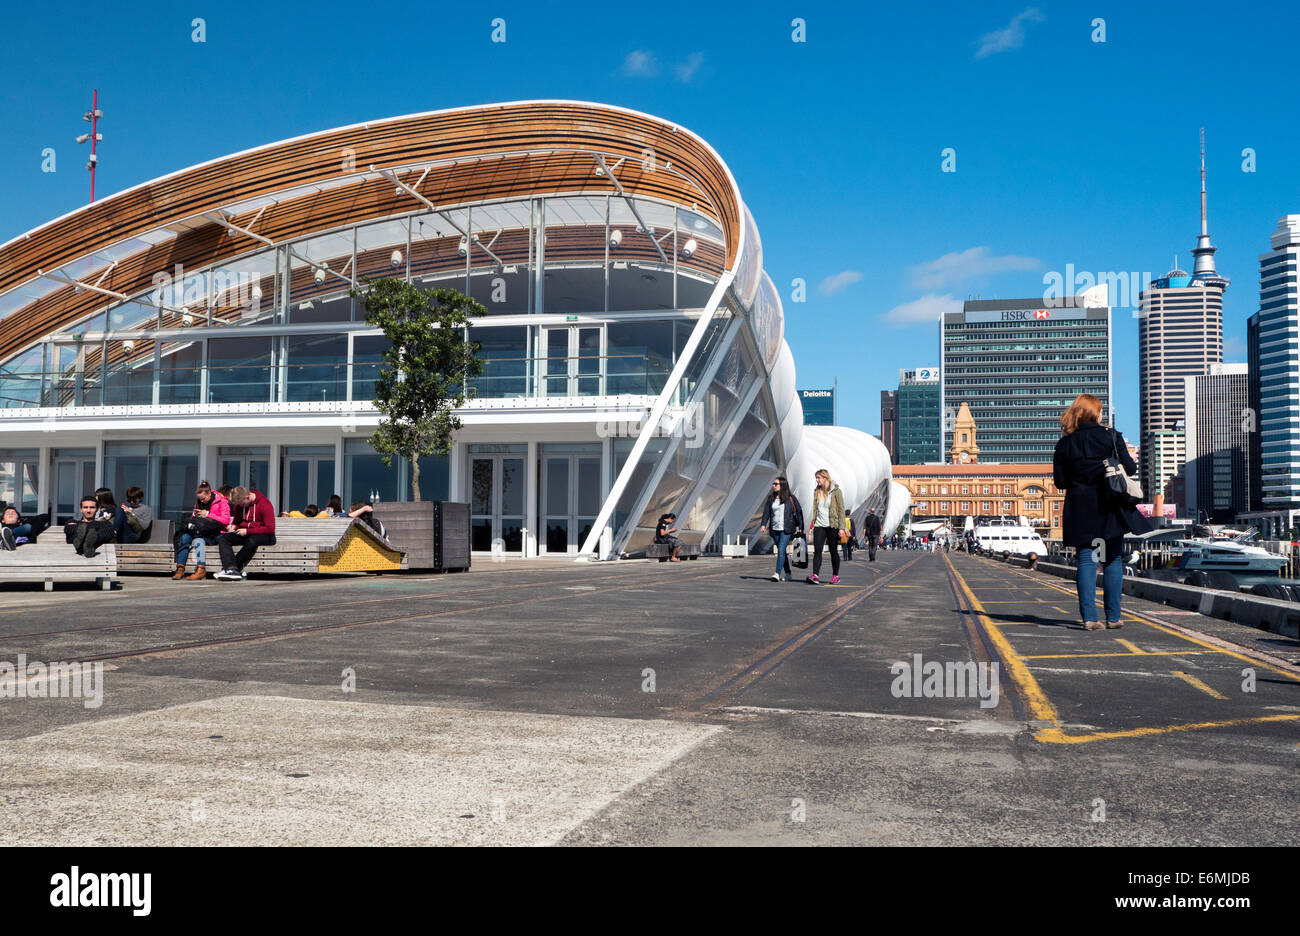 Die Cloud Gebäude, Fanzone Festival und Schaufenster Veranstaltungsort, Queens Wharf Auckland New Zealand Stockfoto